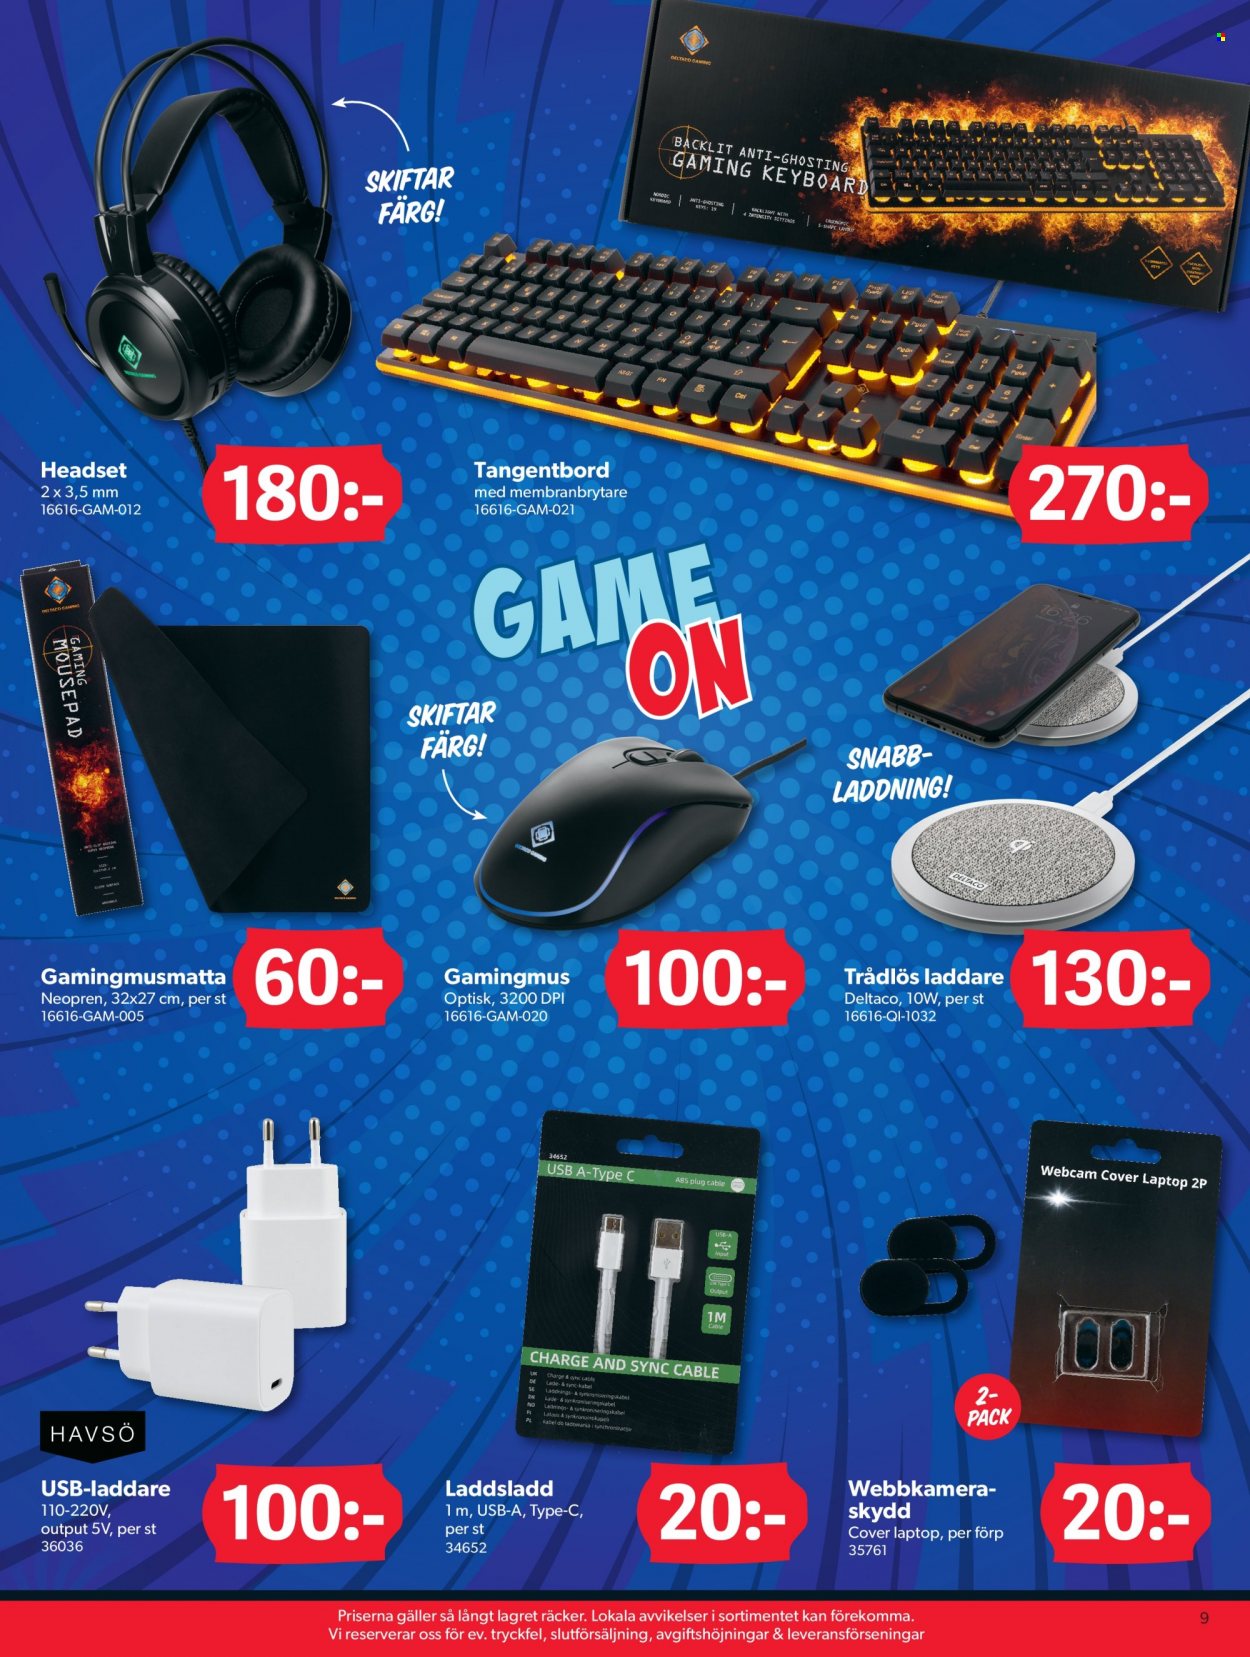 DollarStore reklamblad - varor från reklamblad - trådlös laddare, USB-laddare, tangentbord, gaming-mouse, gaming-musmatta, keyboard. Sida 9.